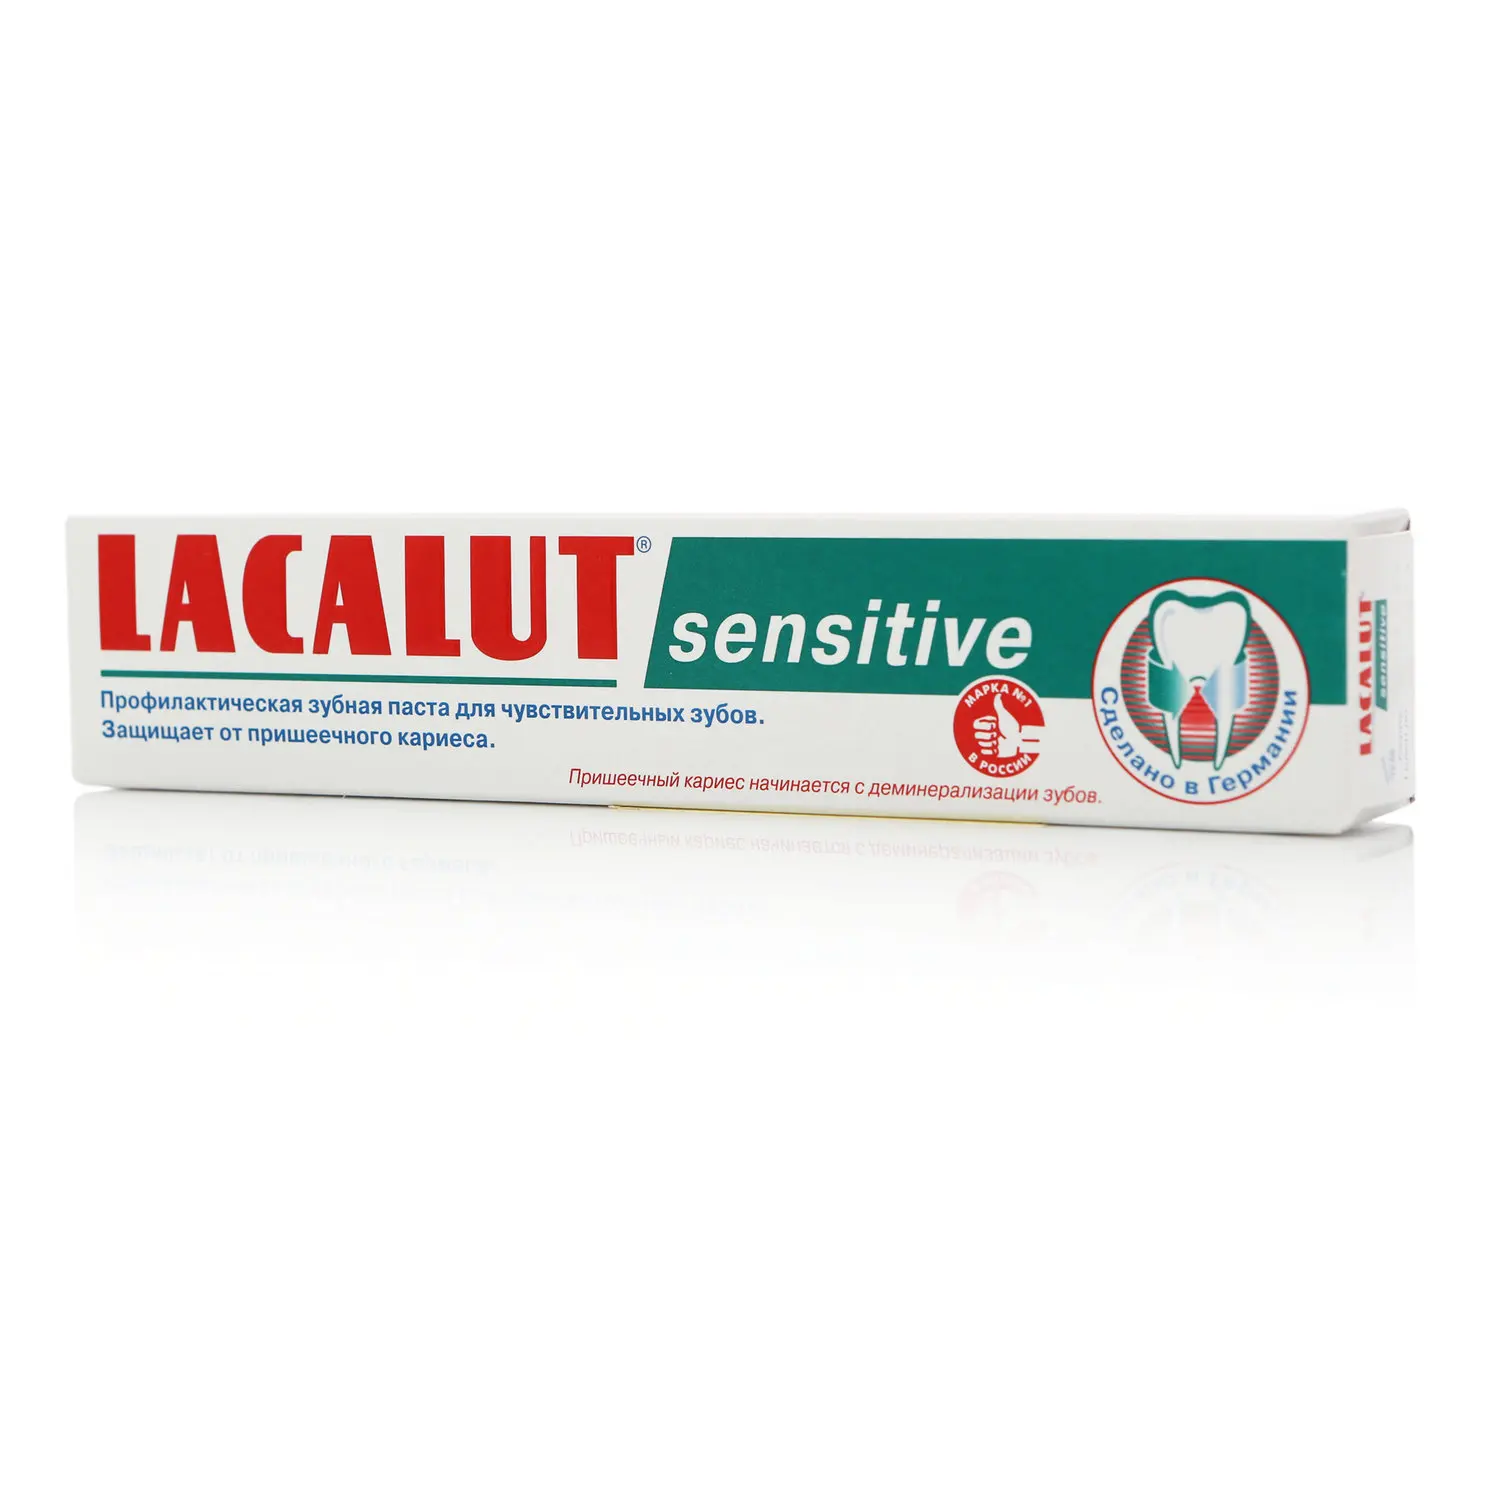 Зубная паста Lacalut sensitive ТМ (Лакалют) | Красота и здоровье